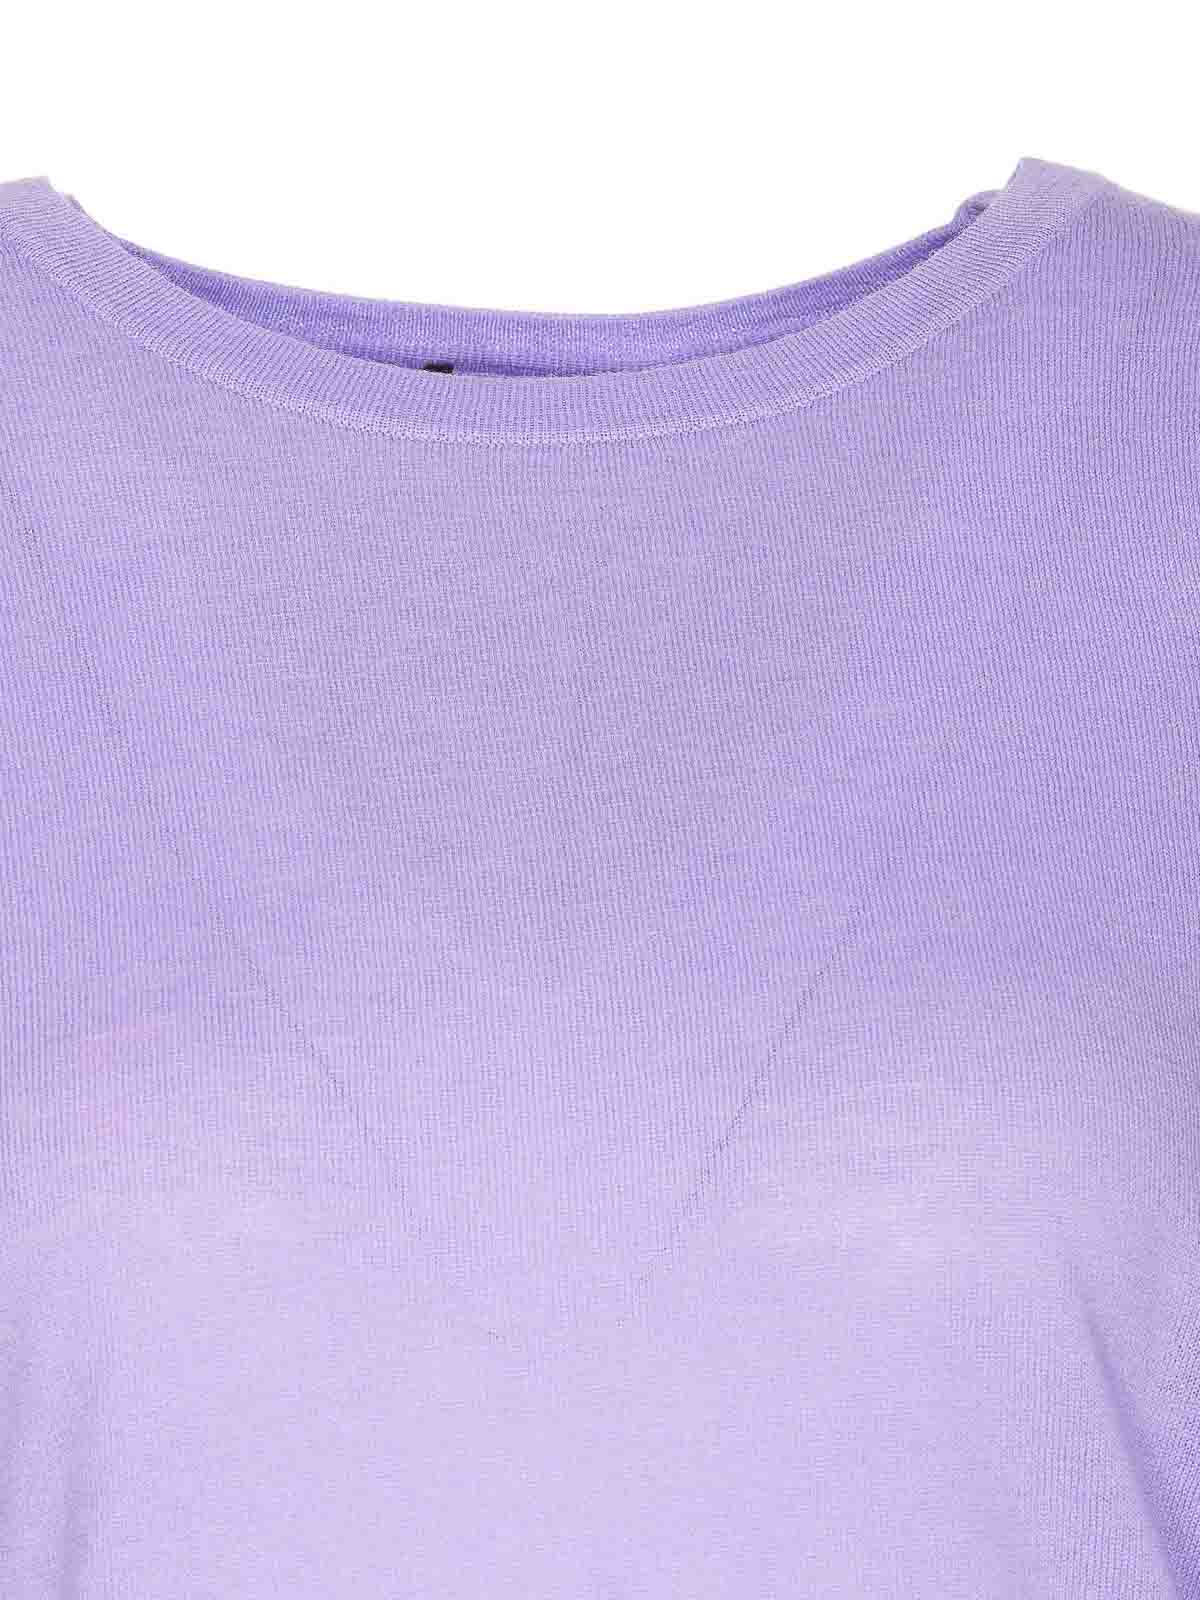 Shop Liu •jo Lilac Sweater Crewneck Golden Button In Purple